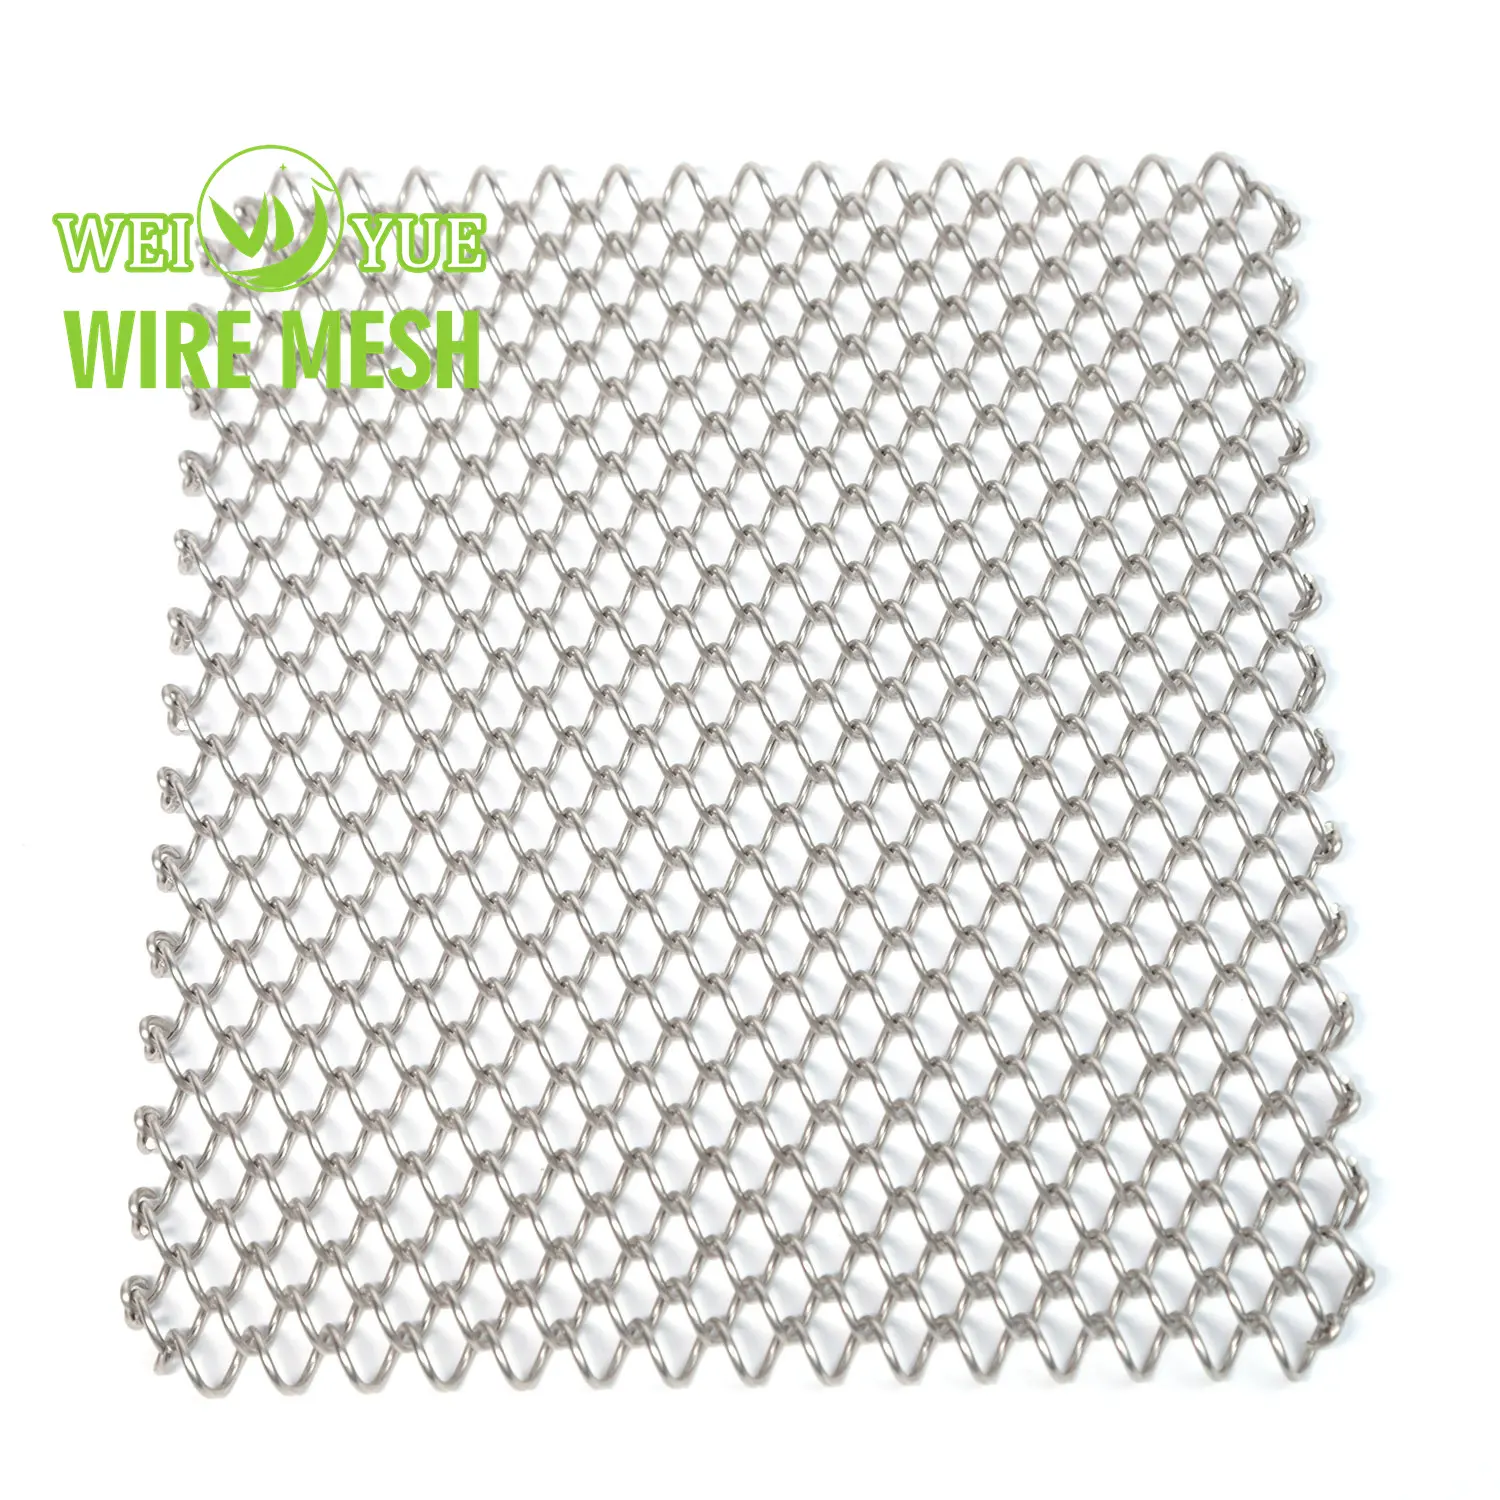 Cortina decorativa de aluminio metalizado con eslabones de cadena, tela para cortinas, chimenea, malla de alambre, malla metálica, cortina de techo